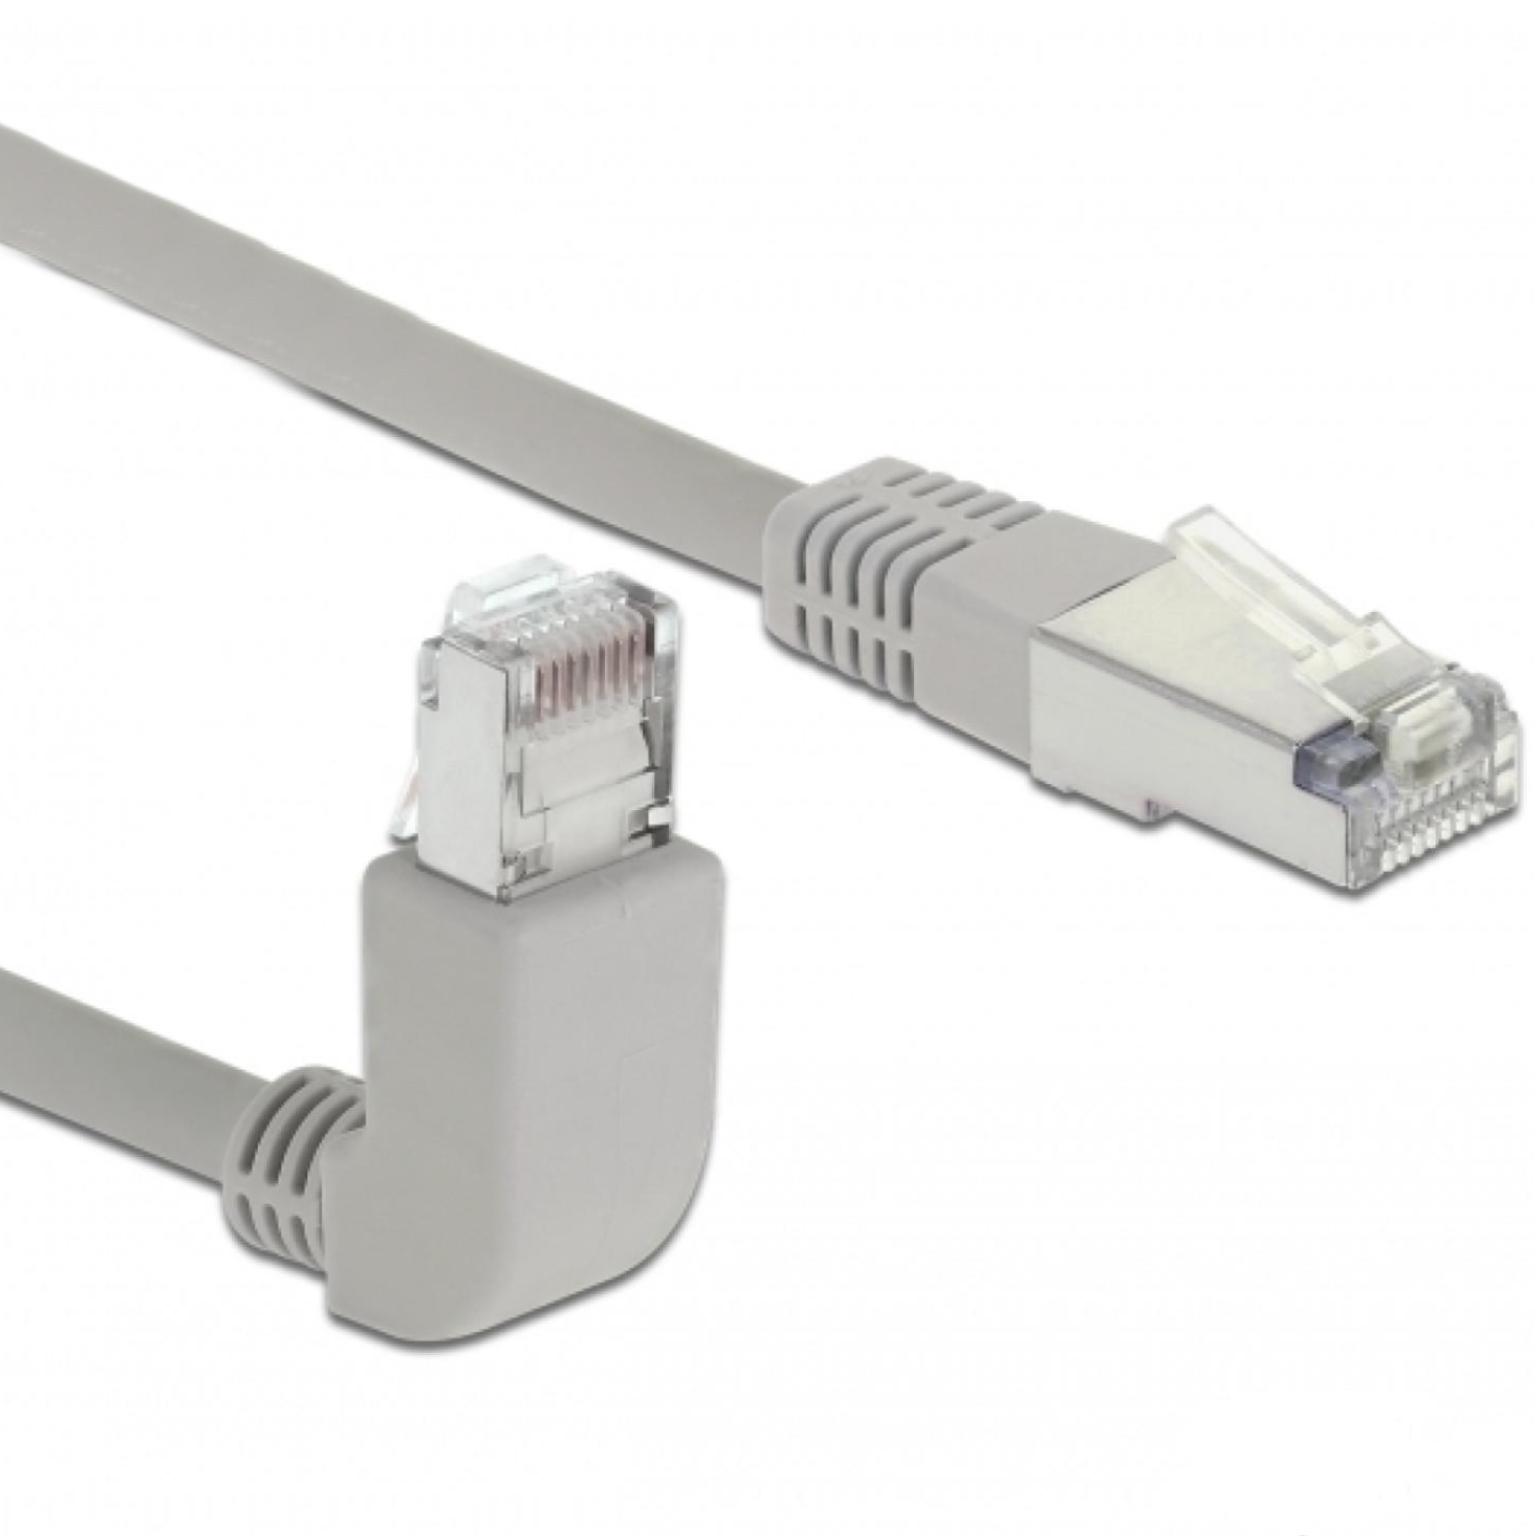 S/FTP Cat 6 kabel - haaks - 1 meter - Delock